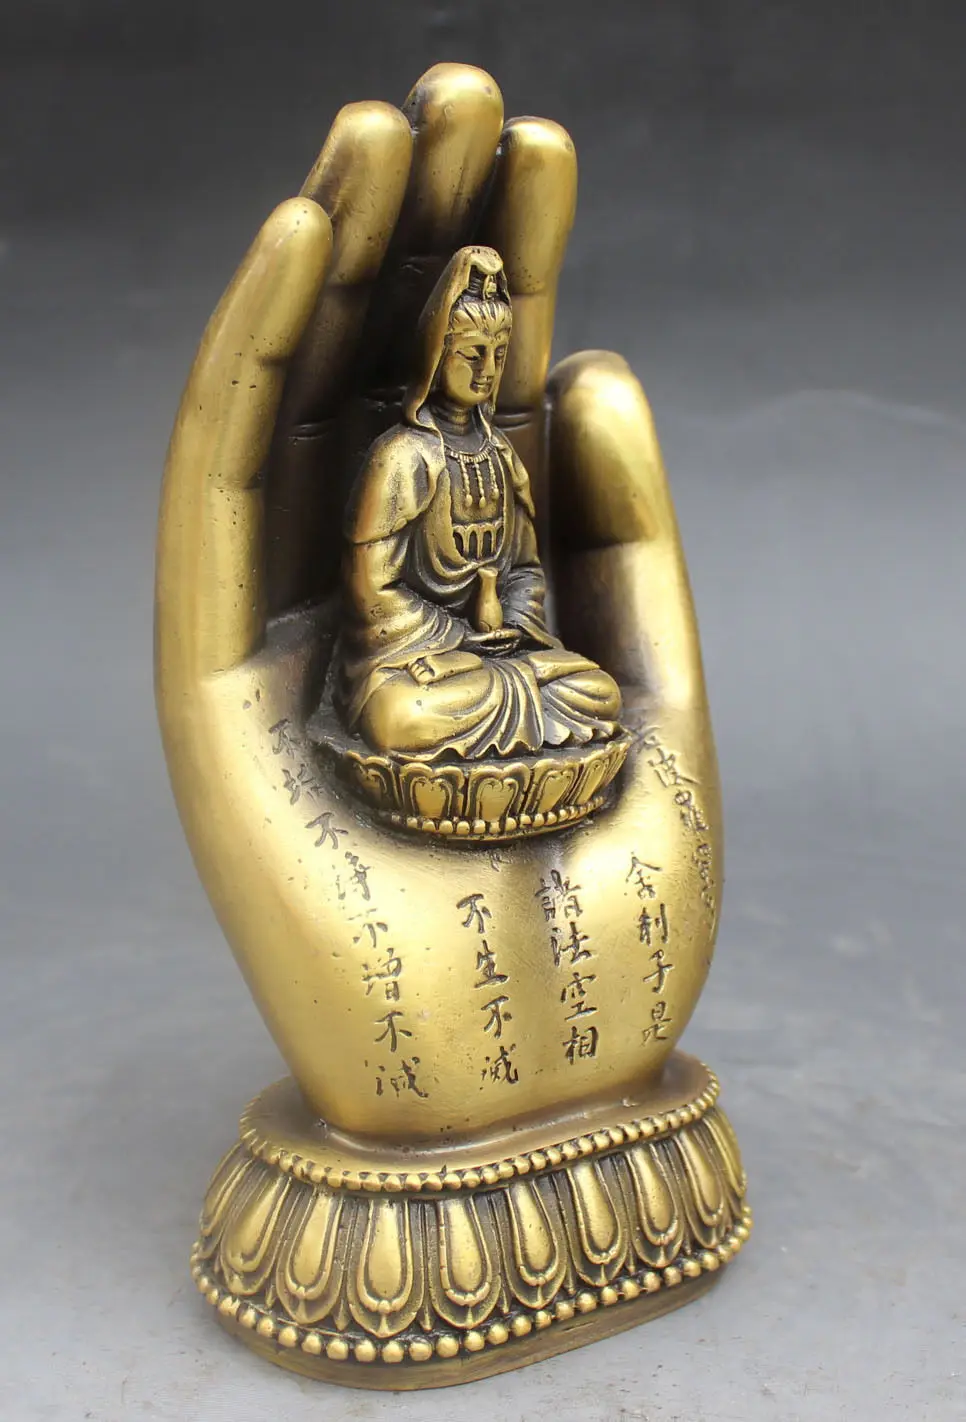 

Chinese Buddhism Bronze Kwan-yin Bodhisattva Goddess Hand Buddha Statue metal handicraft